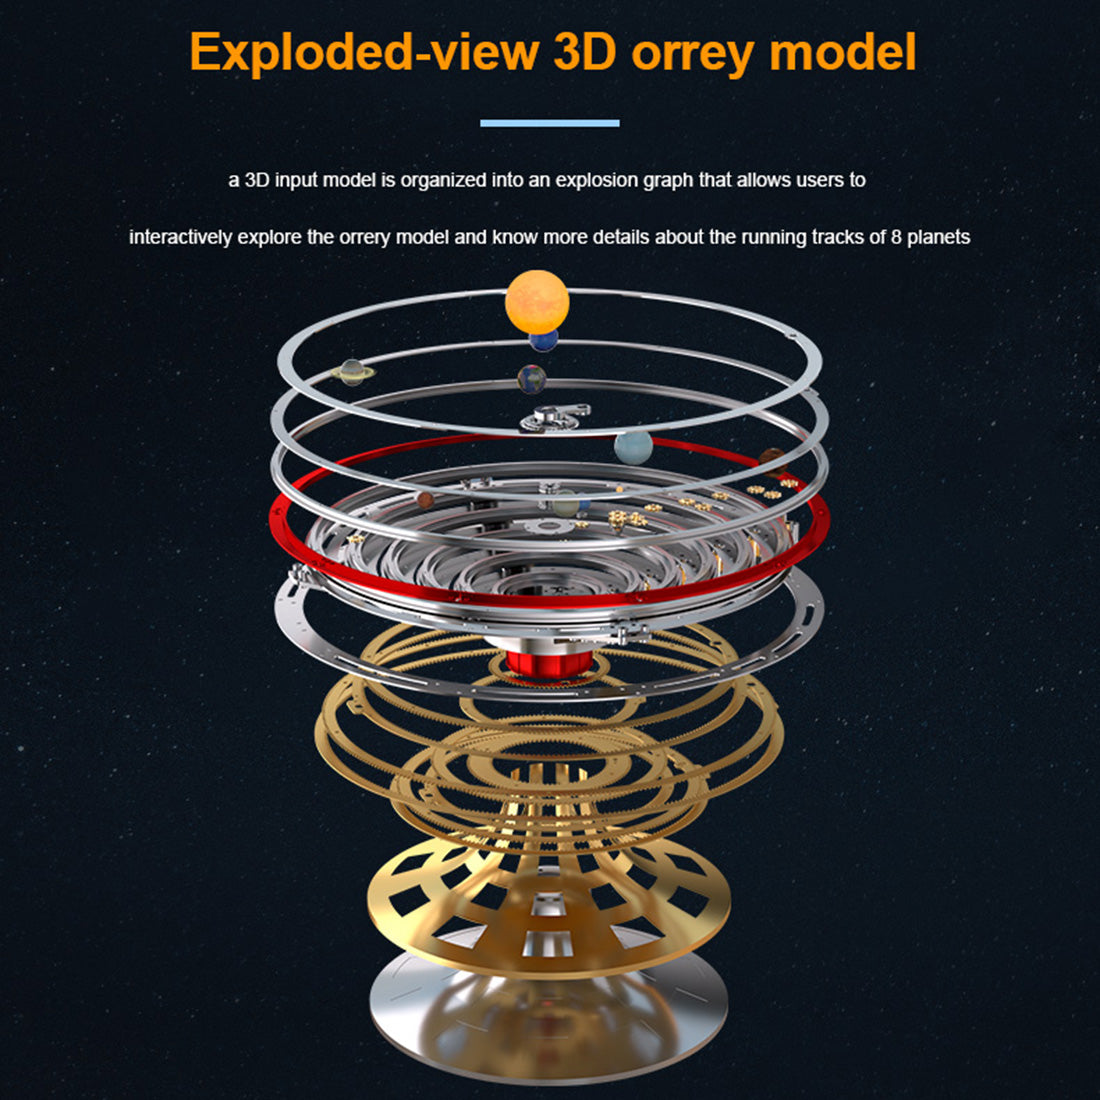 how work solar system model motorized